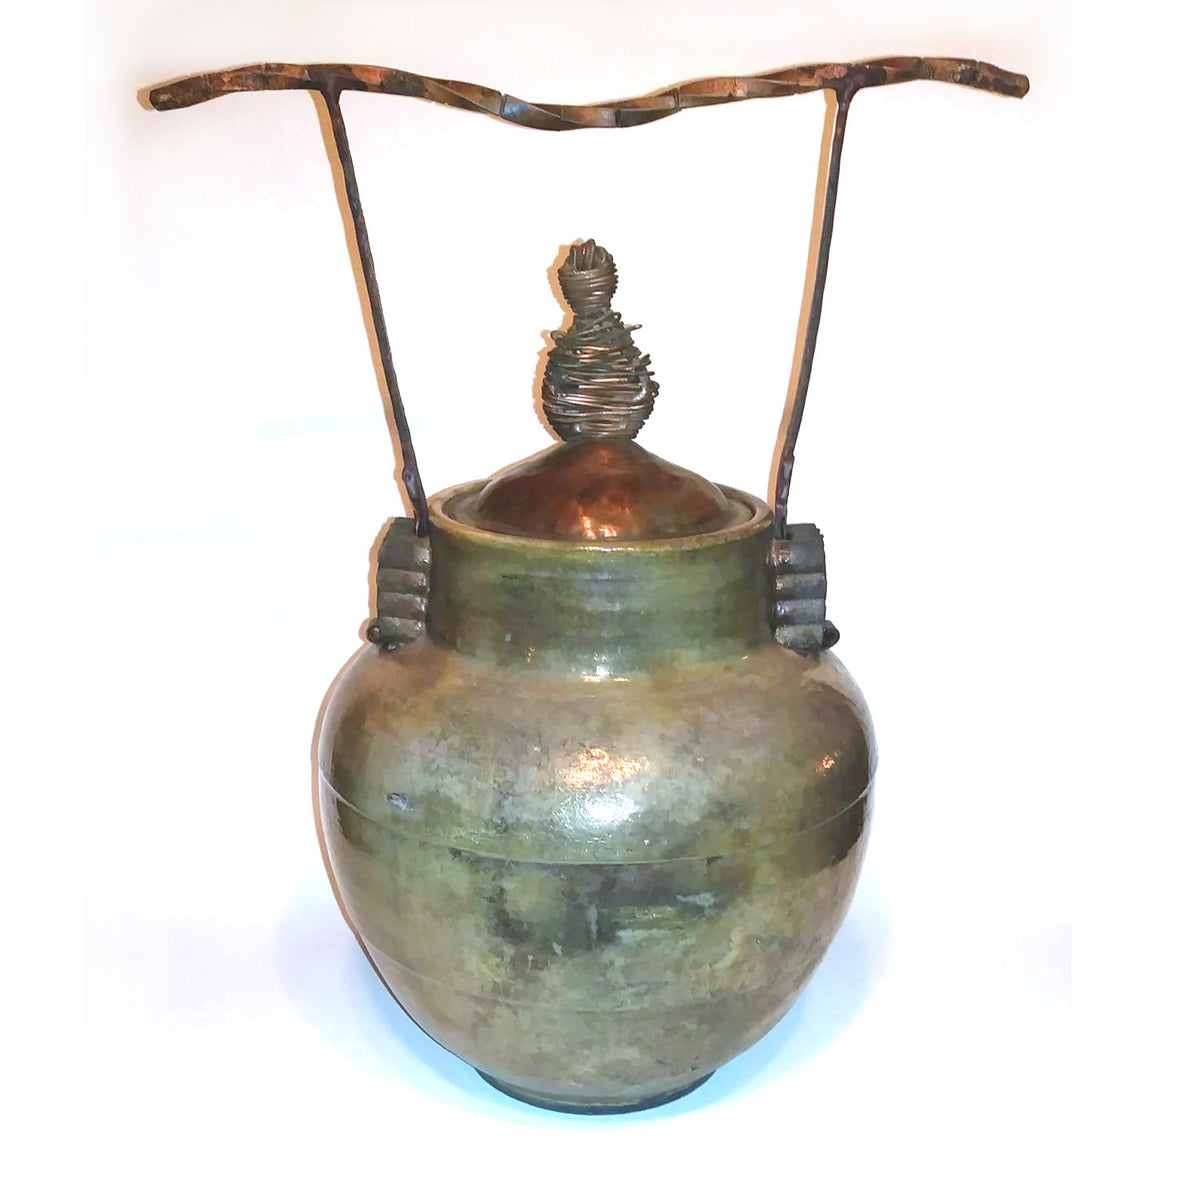 Richard & susan surette-silver/gold glaze covered jar with copper lid